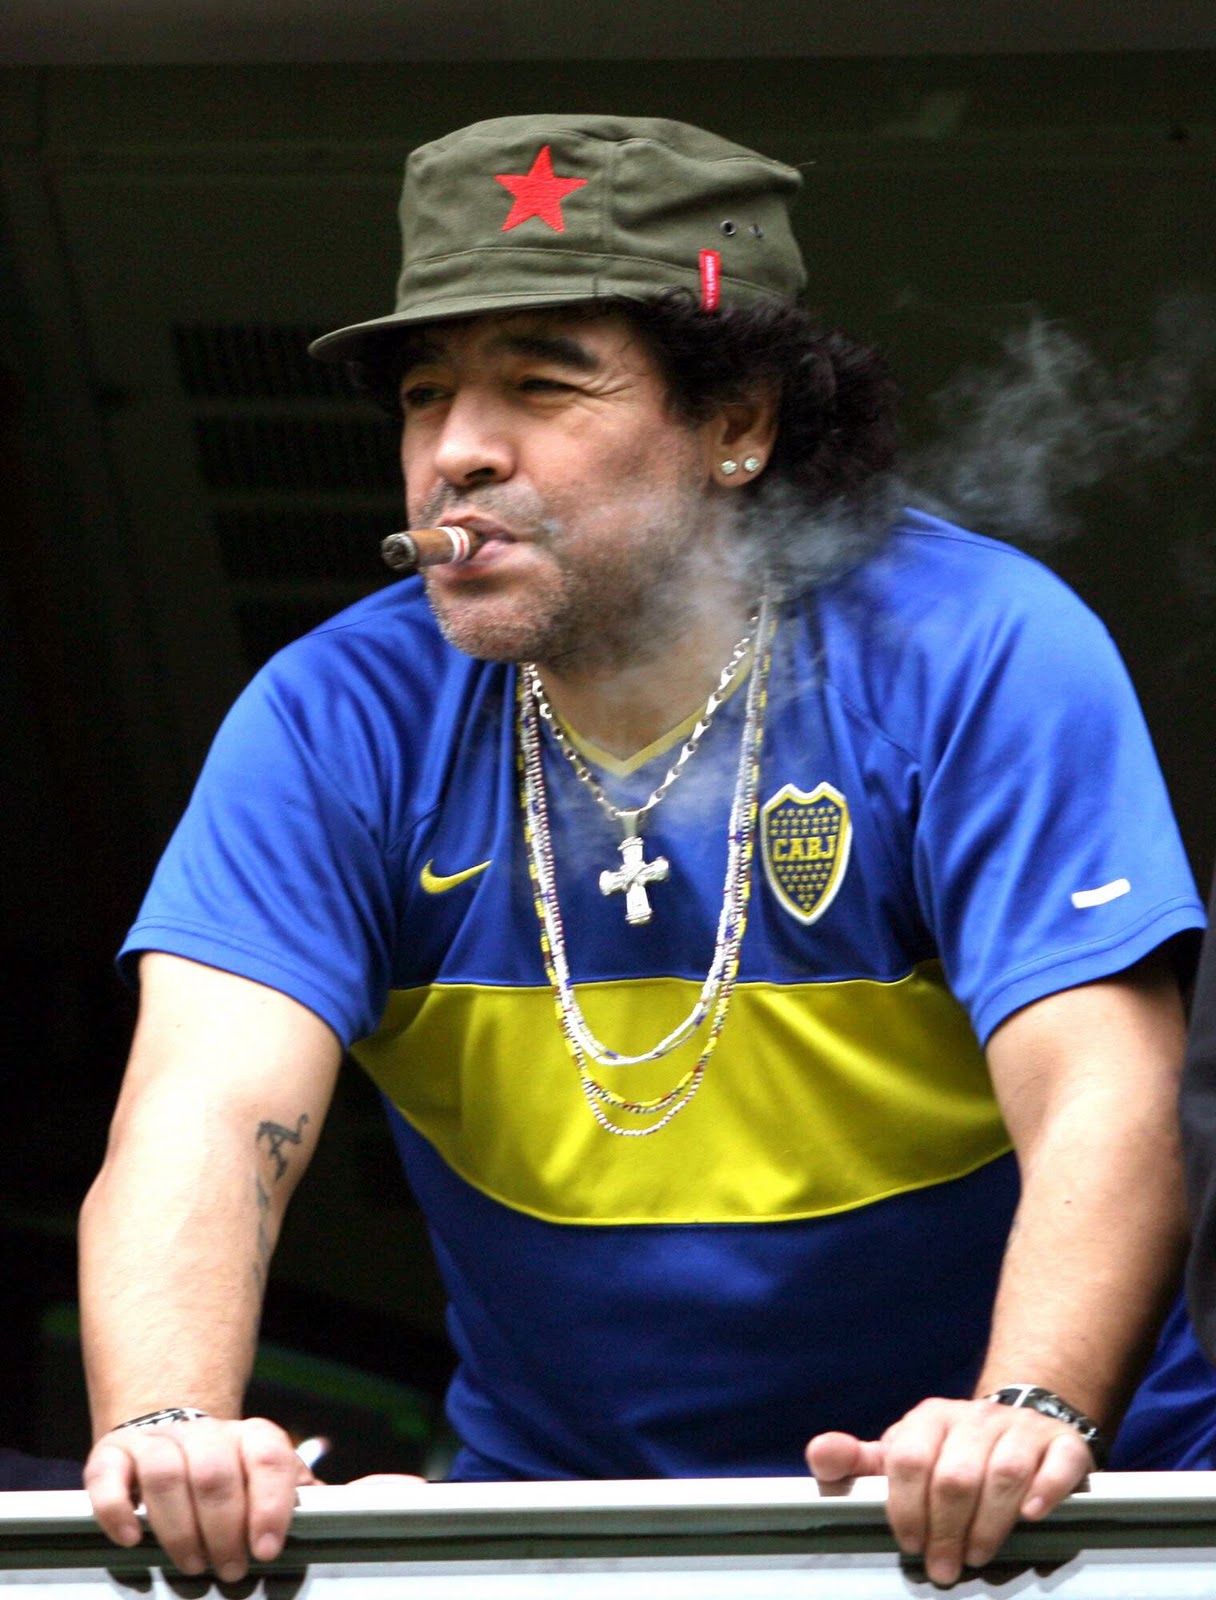 http://4.bp.blogspot.com/_6fsEVc1TEME/TM6WXNH8mxI/AAAAAAAAACY/I76EZxnmdh0/s1600/Maradona.jpg